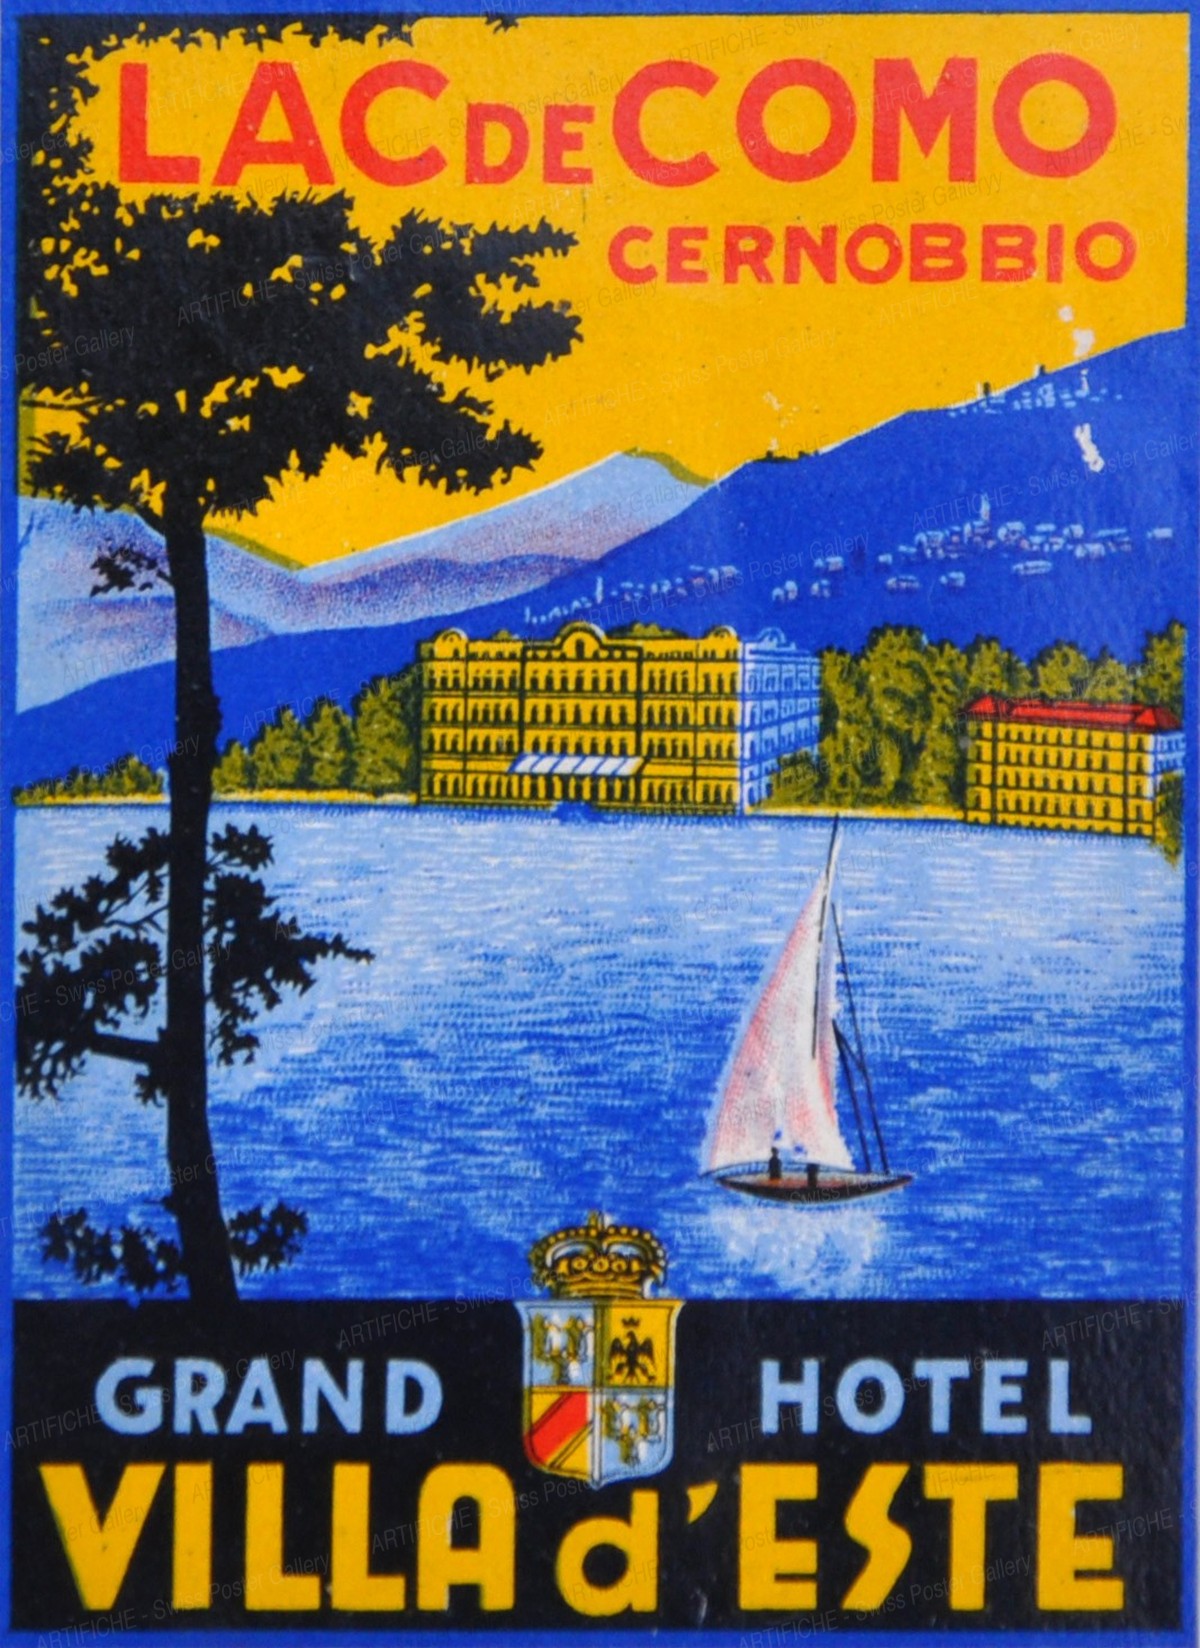 Grand Hotel Villa d’Este Como – Lac de Como Cernobbio, Artist unknown